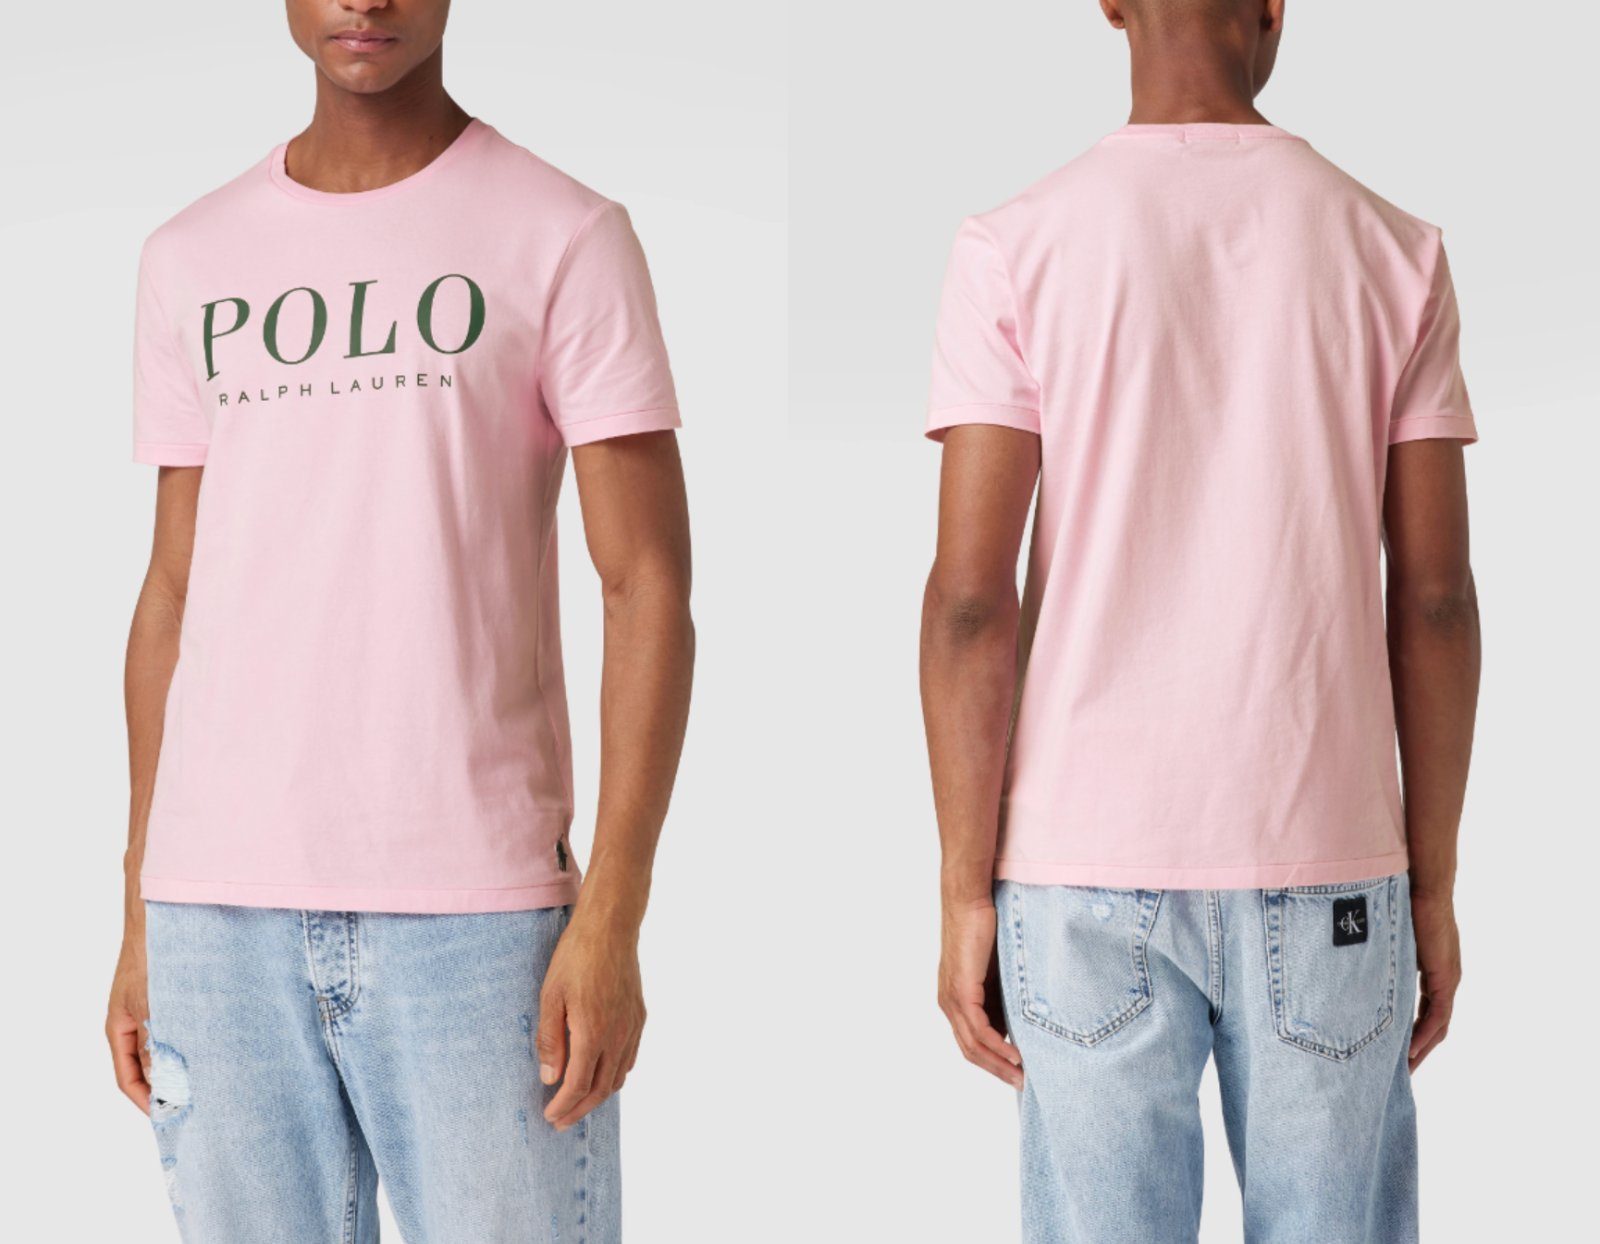 Ralph Lauren T-Shirt Polo Ralph Lauren Logo Pony T-Shirt Soft Shirt Custom Slim Fit Tee Cot